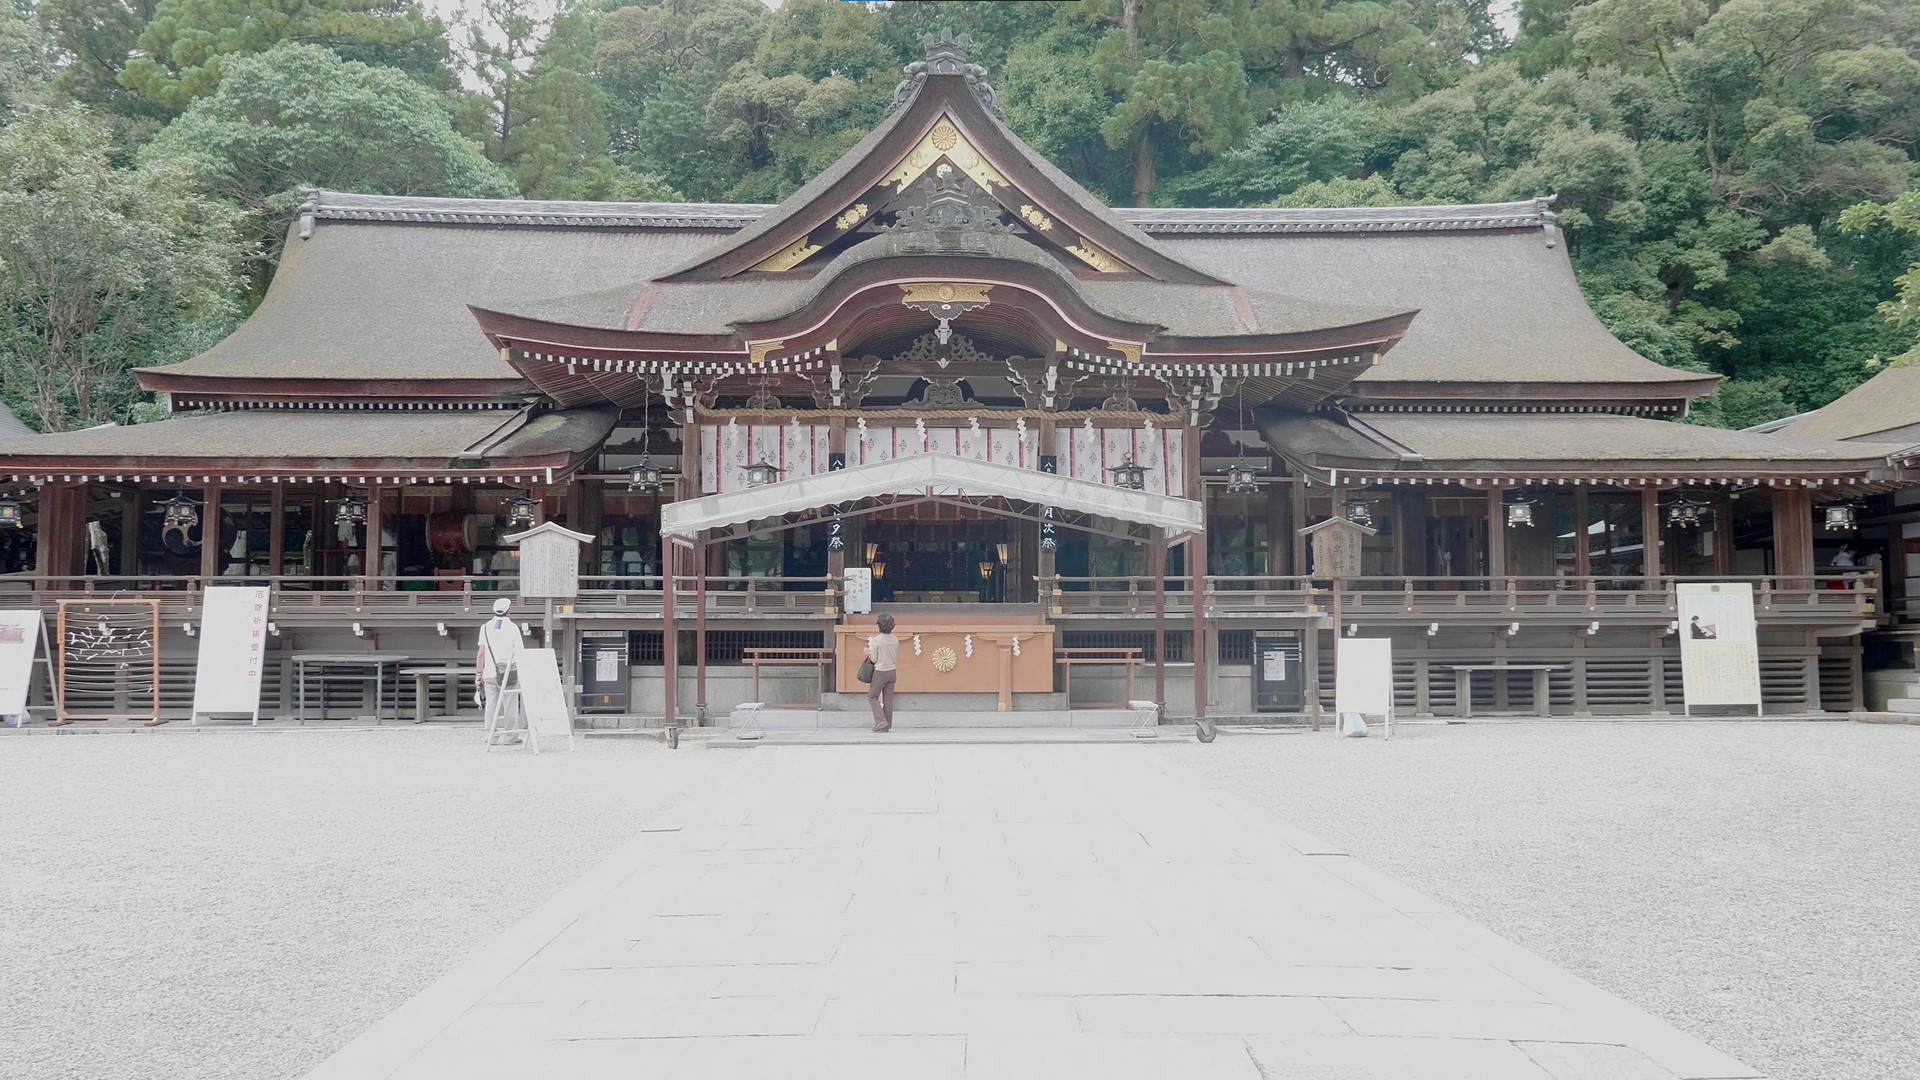 神様の神様を祀る 大神神社 原初の神祀りの様を伝える我が国最古の神社 Video Cameraman Community